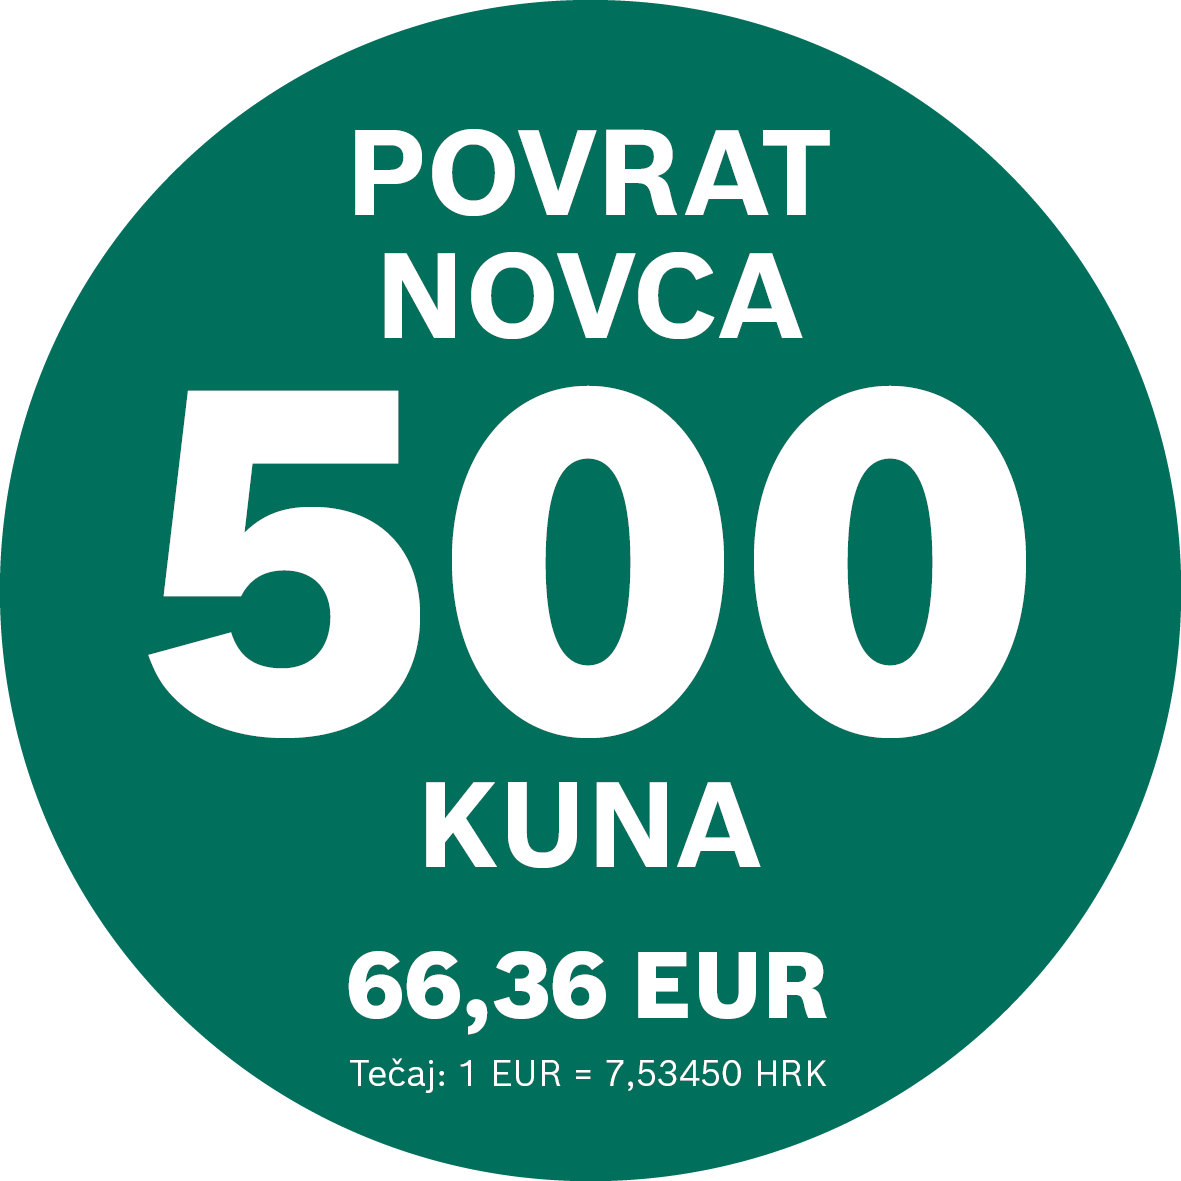 povrat-novca-500-kuna_4.png